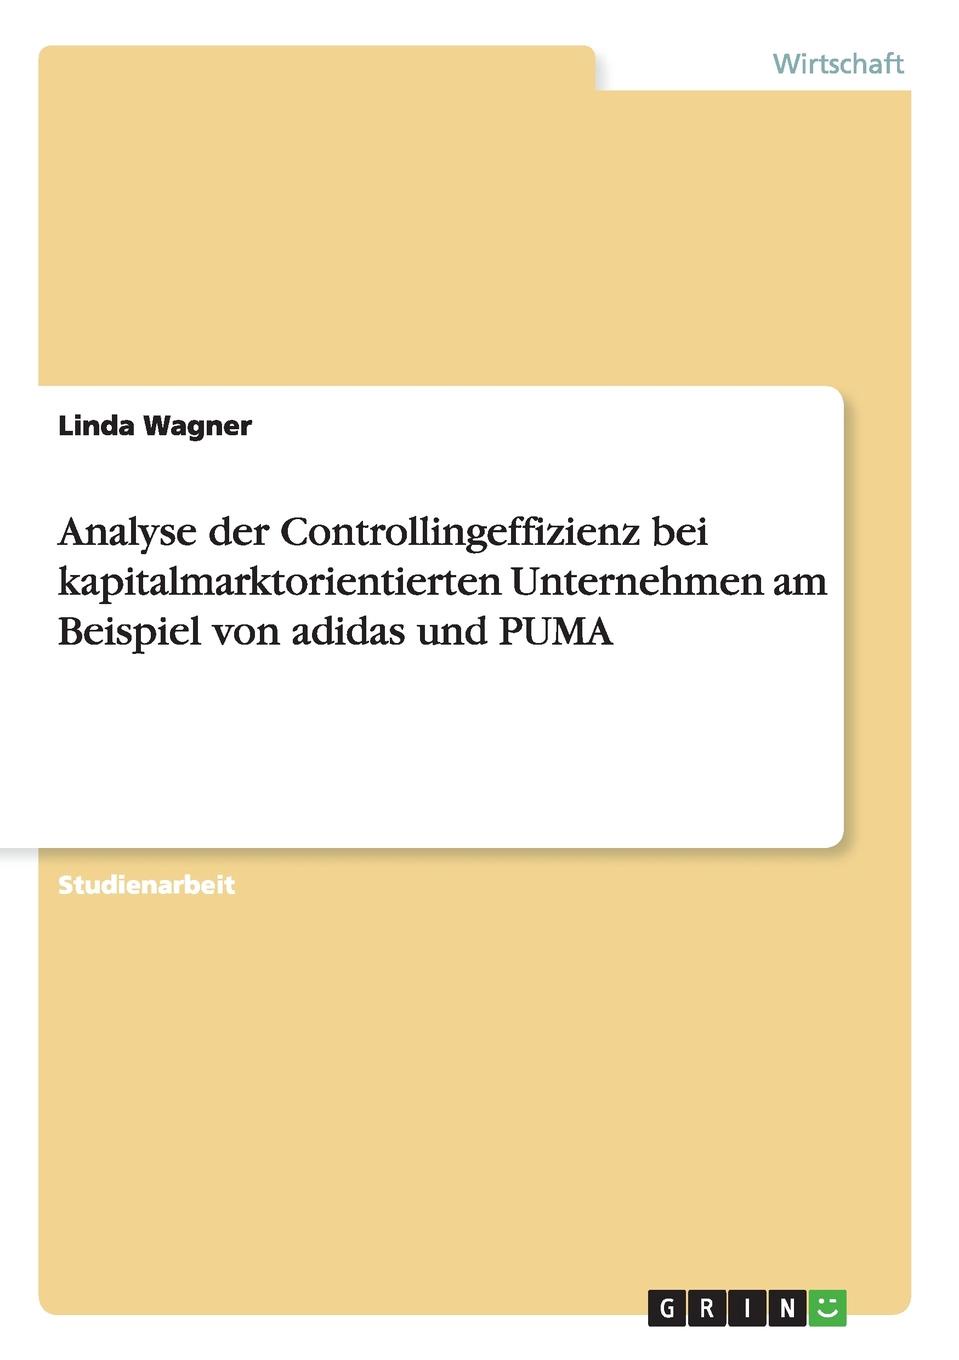 Analyse der Controllingeffizienz bei kapitalmarktorientierten Unternehmen am Beispiel von adidas und PUMA